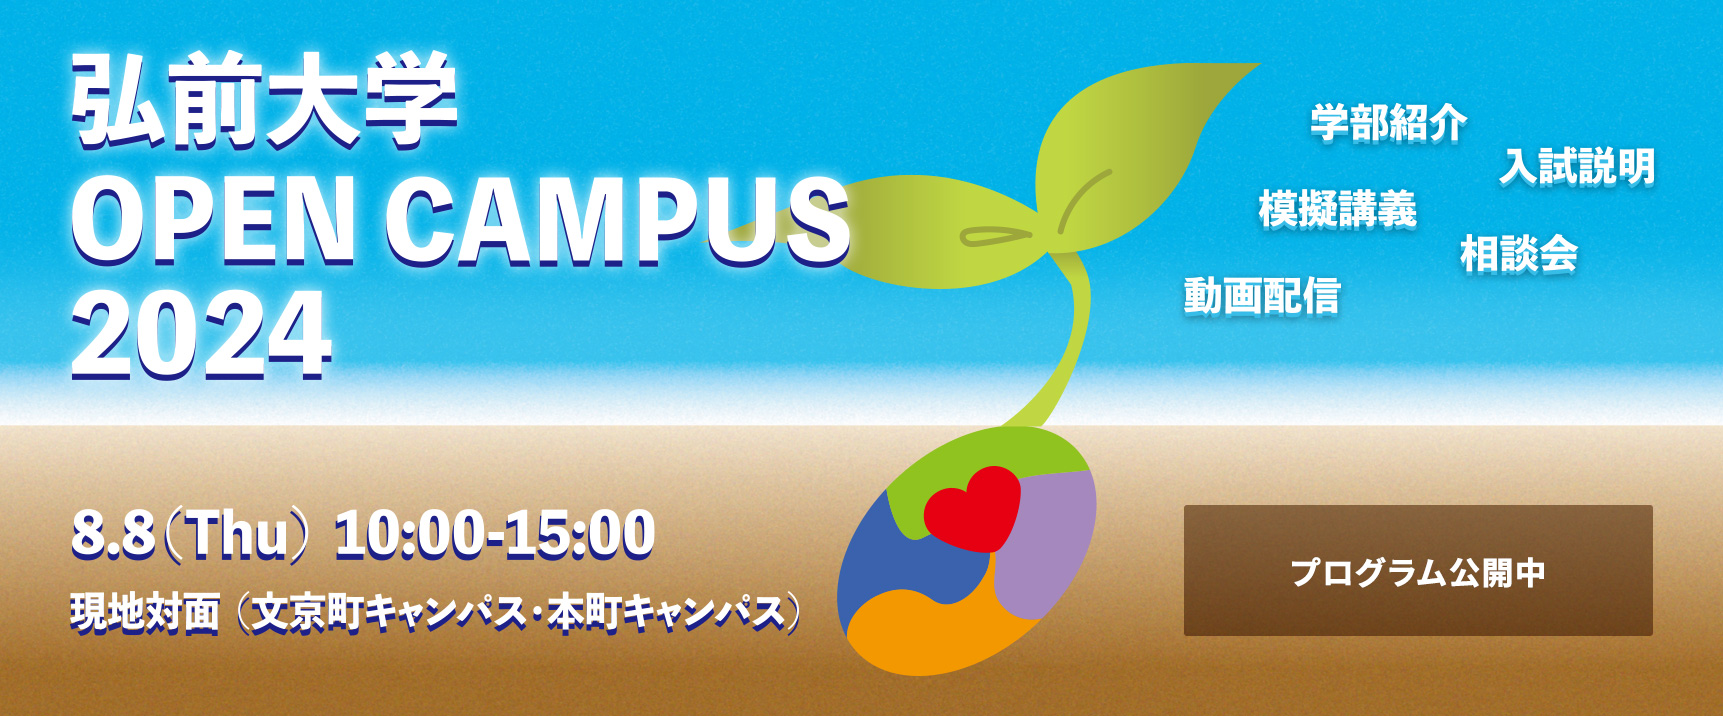 弘前大学オープンキャンパス2024